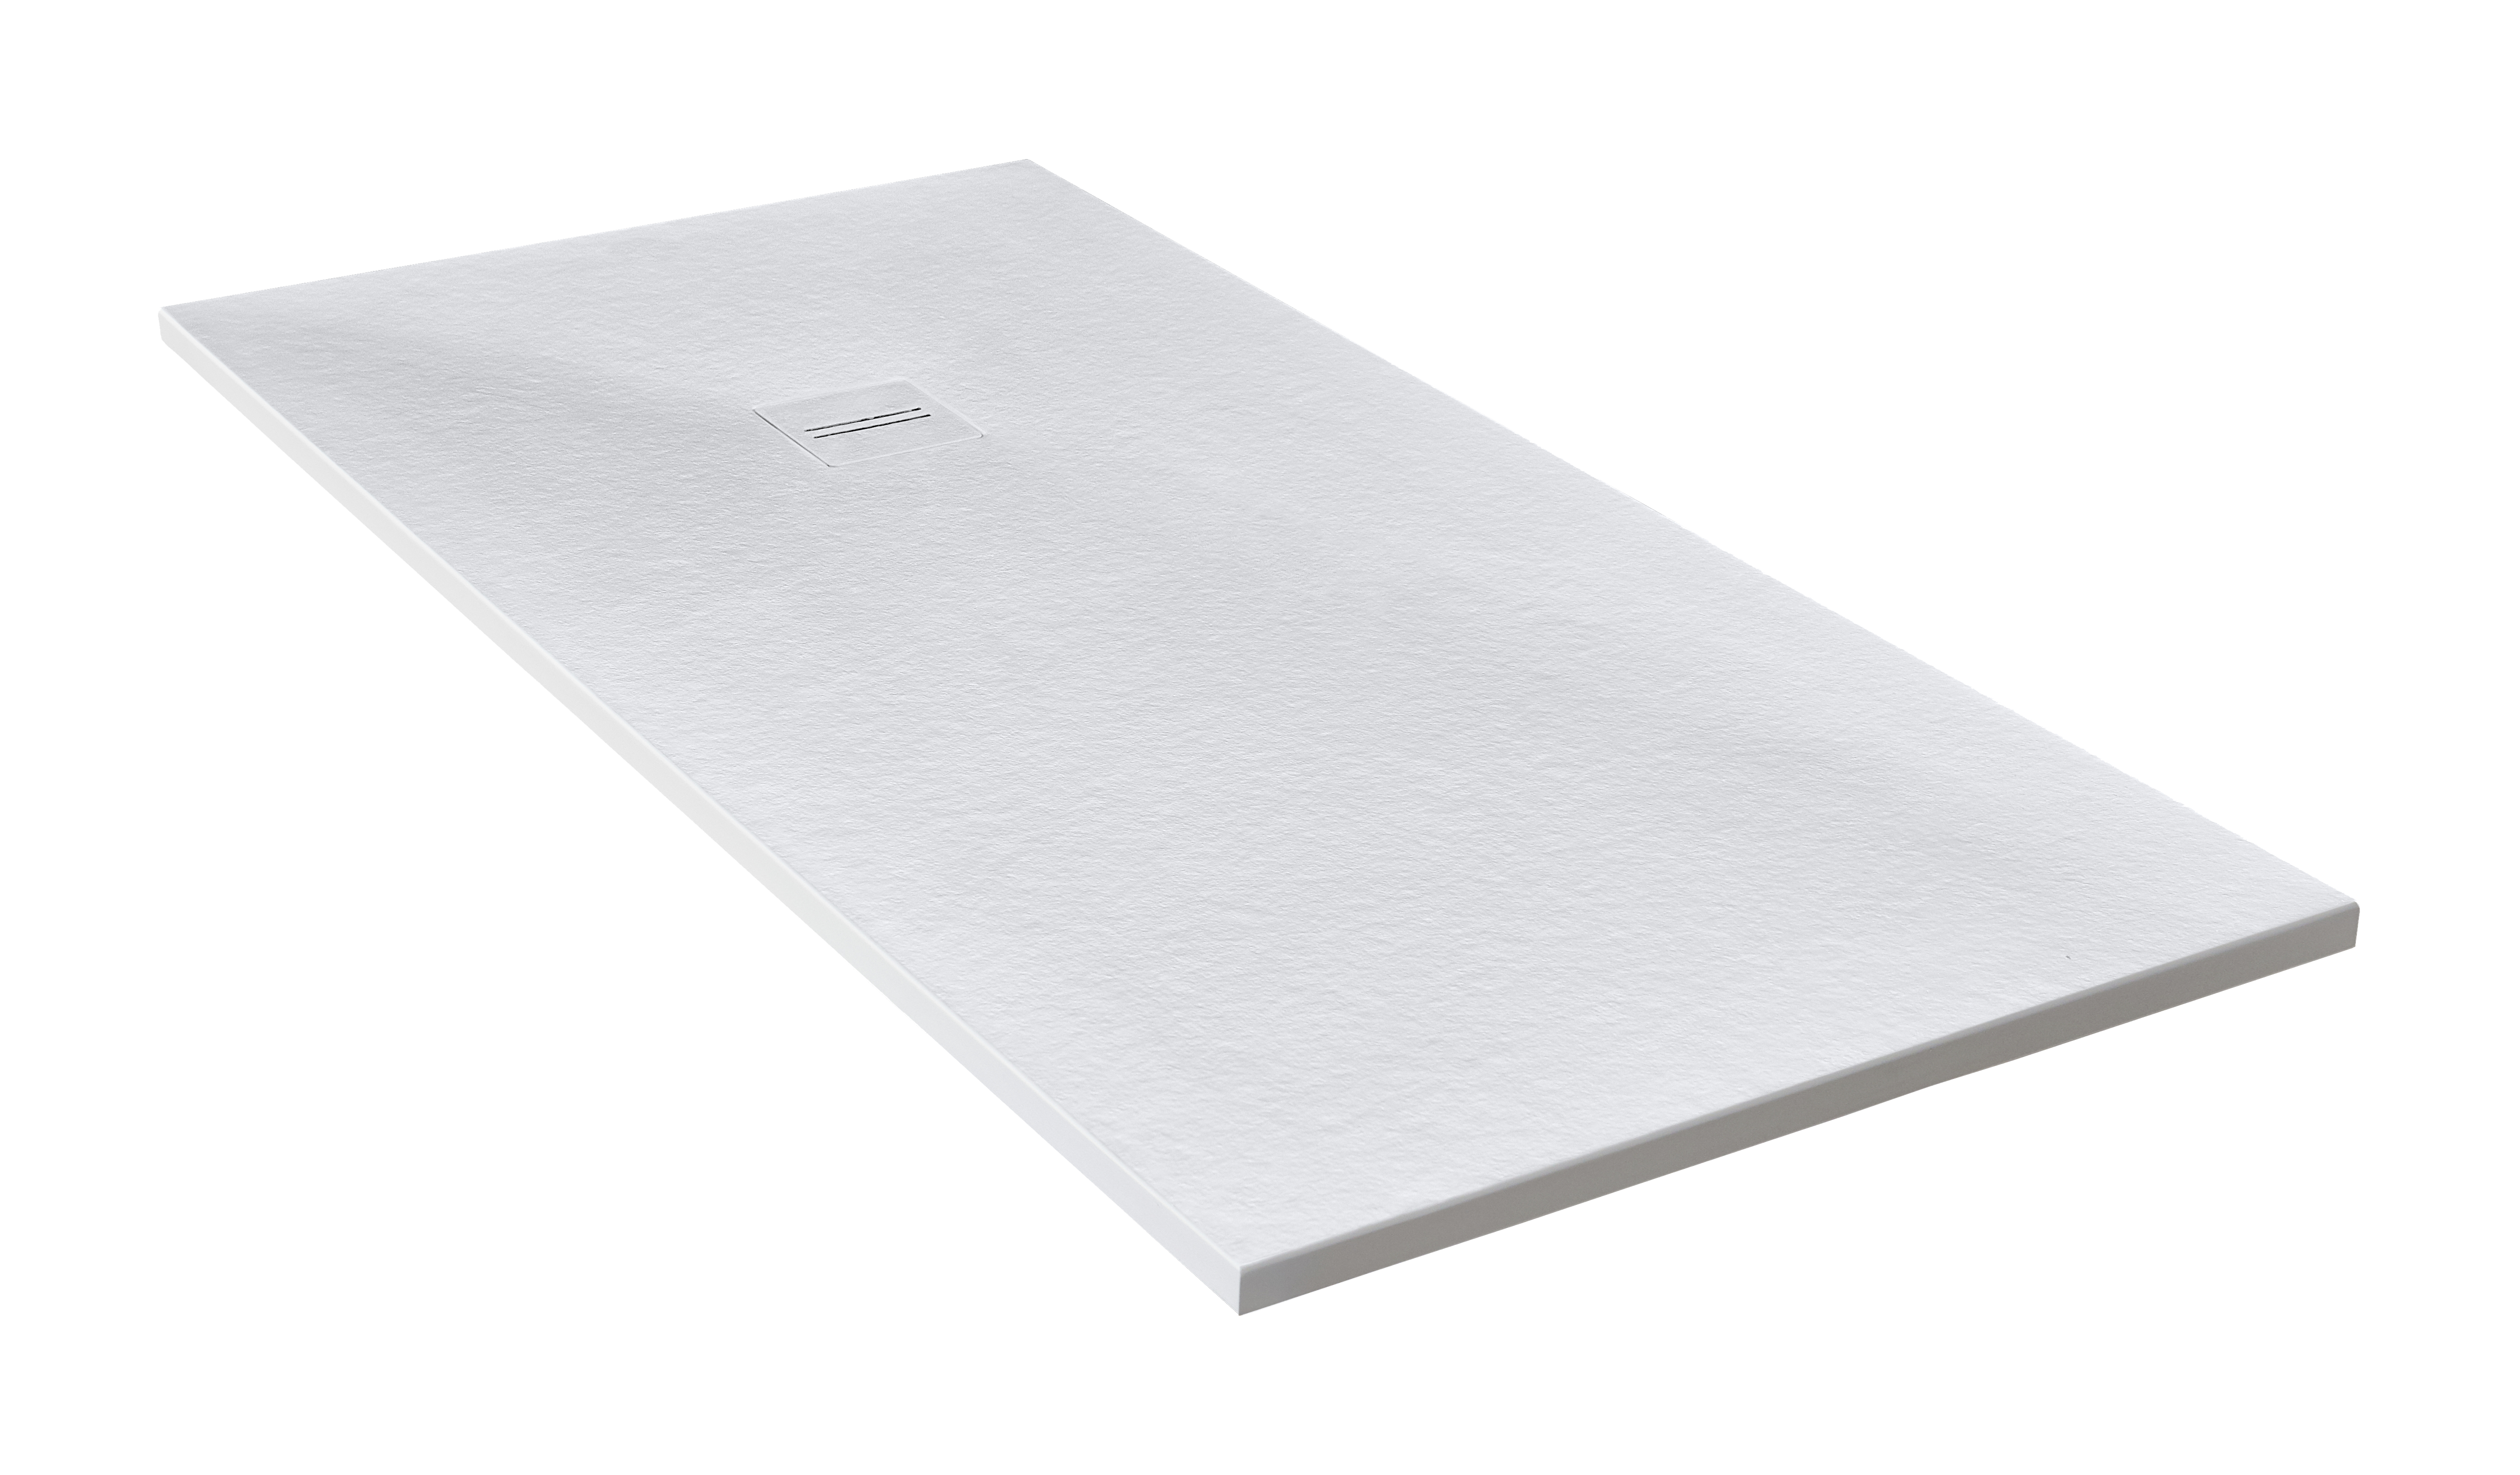 Plato de ducha cosmos 210x70 cm blanco